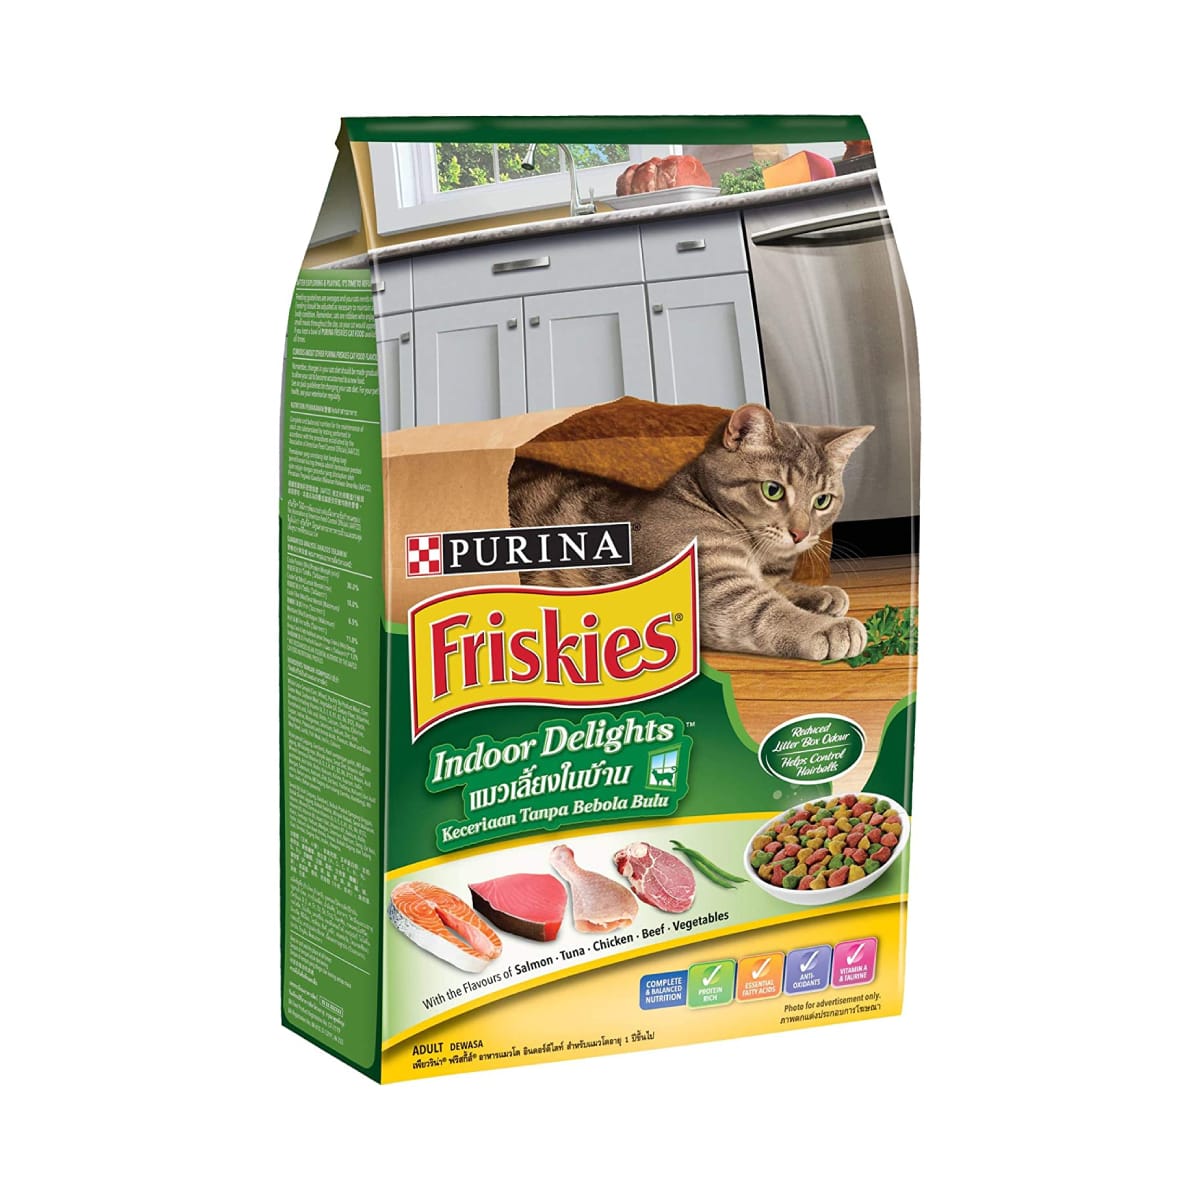 Friskies ฟริสกี้ส์ อาหารเม็ด สำหรับแมวโตเลี้ยงในบ้าน 1.1 kg_1